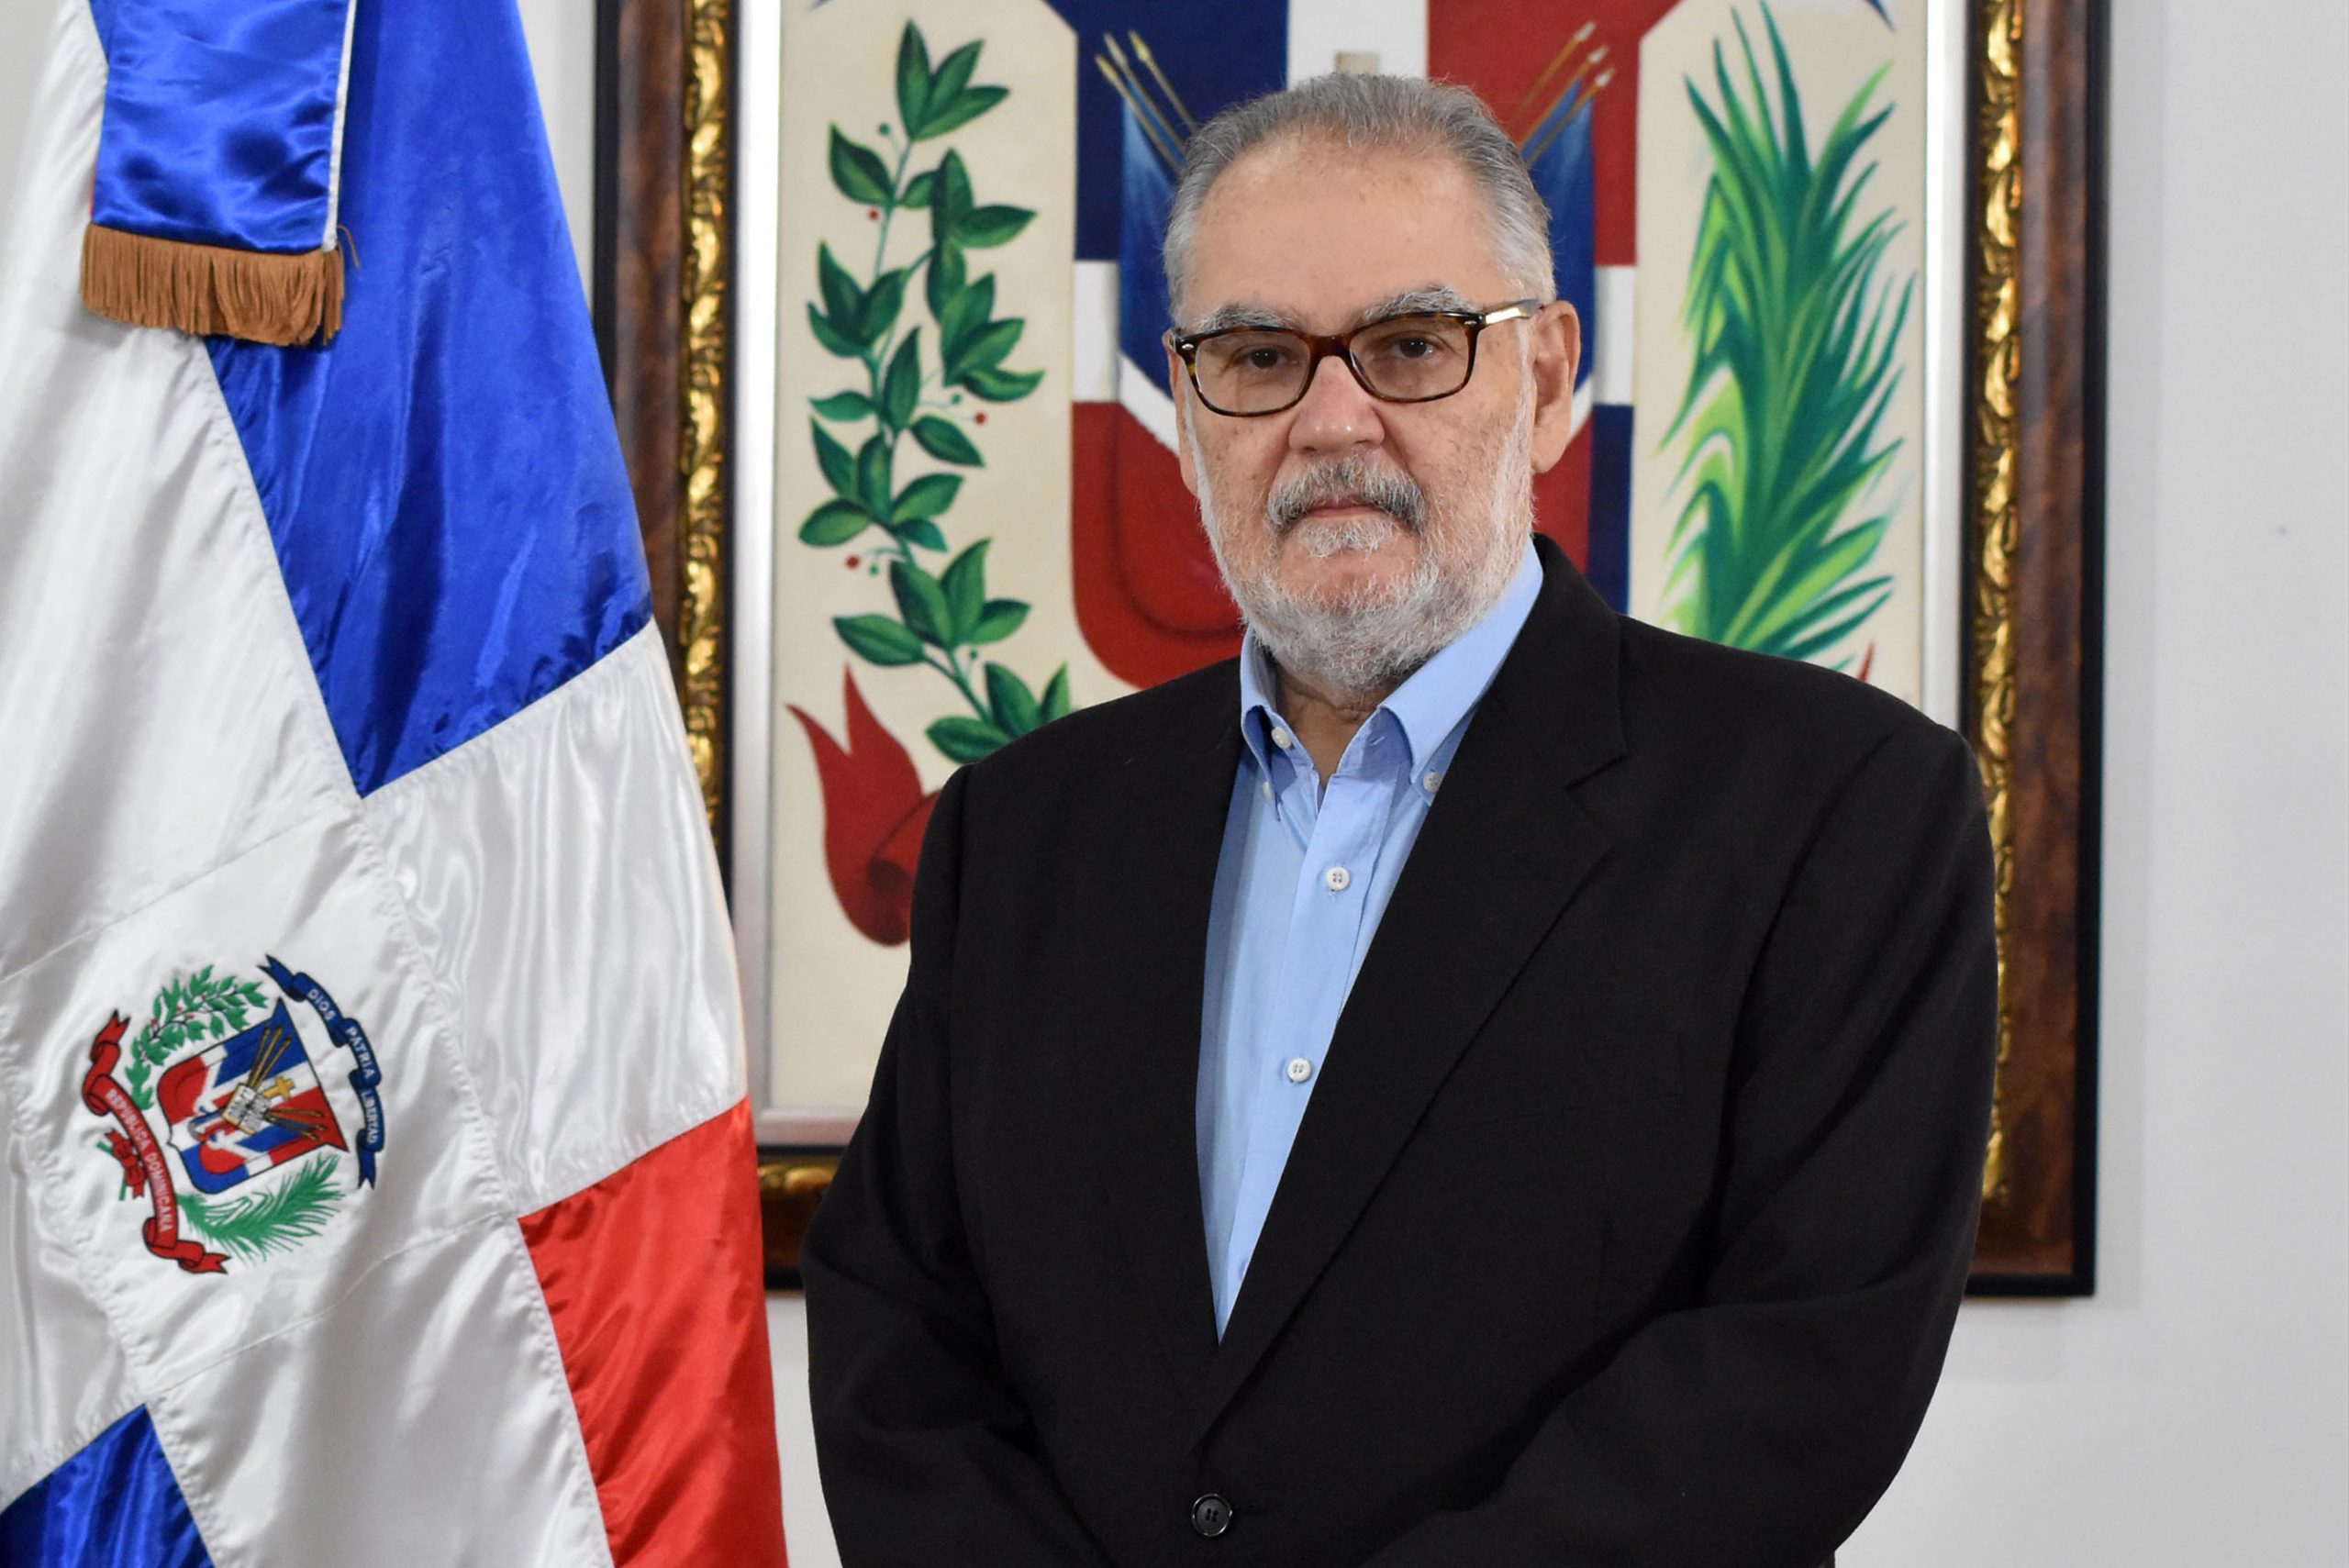 El ministro de Economía, Planificación y Desarrollo, Miguel Ceara Hatton